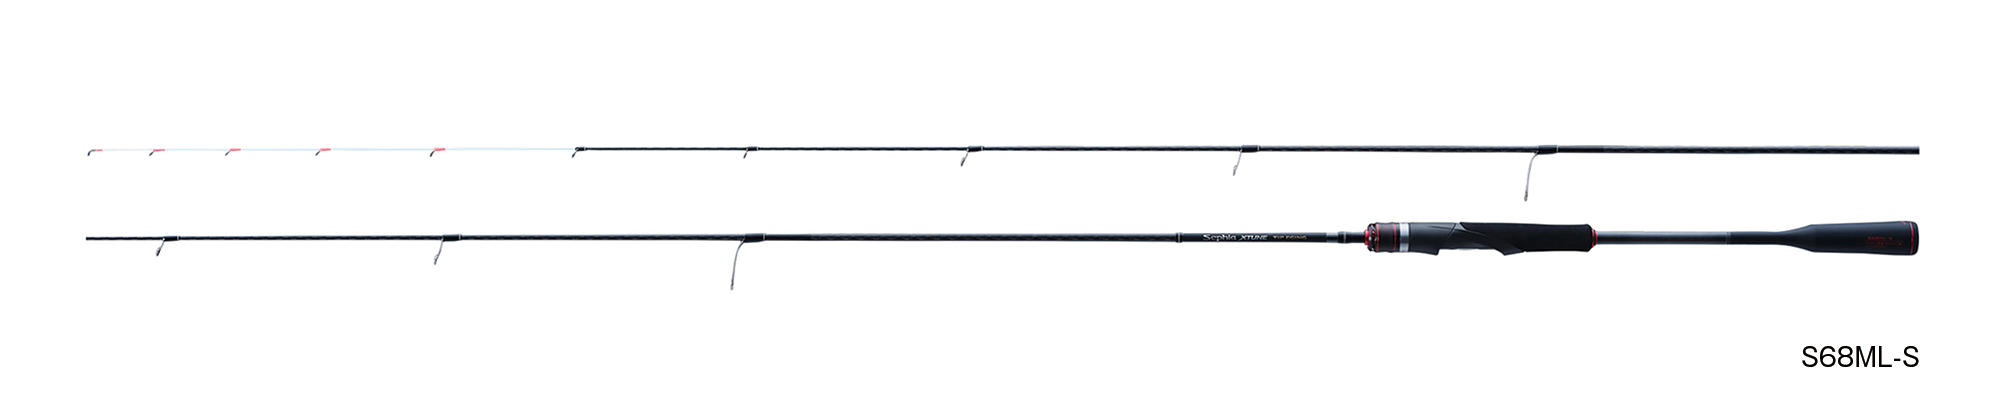 シマノ シマノ 23 セフィア SS S93ML ロッド ソルト竿 2023年 7月新製品